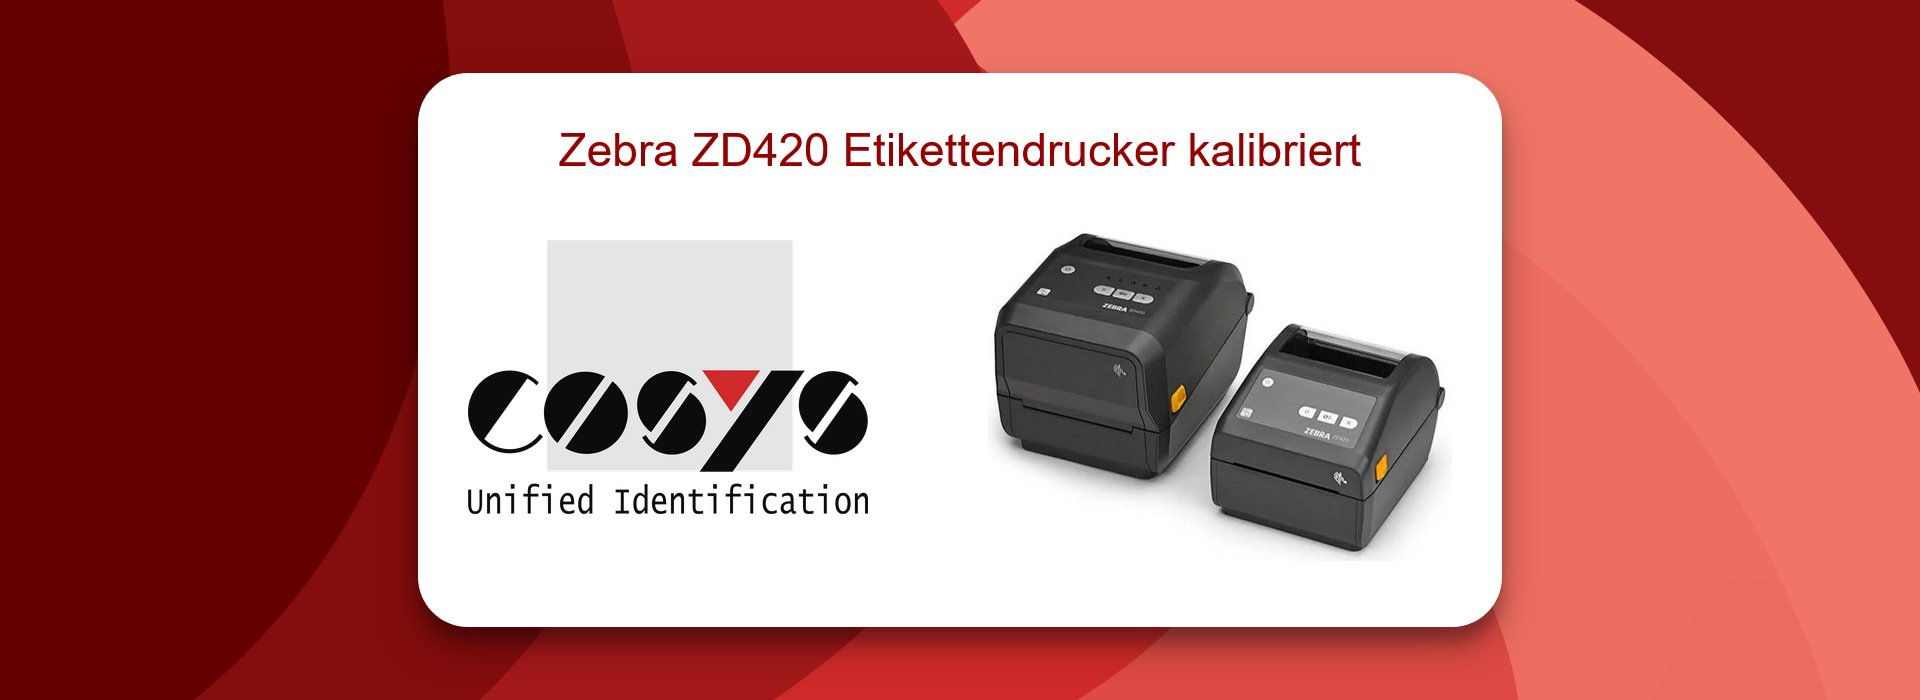 Zebra ZD420 Etikettendrucker kalibriert